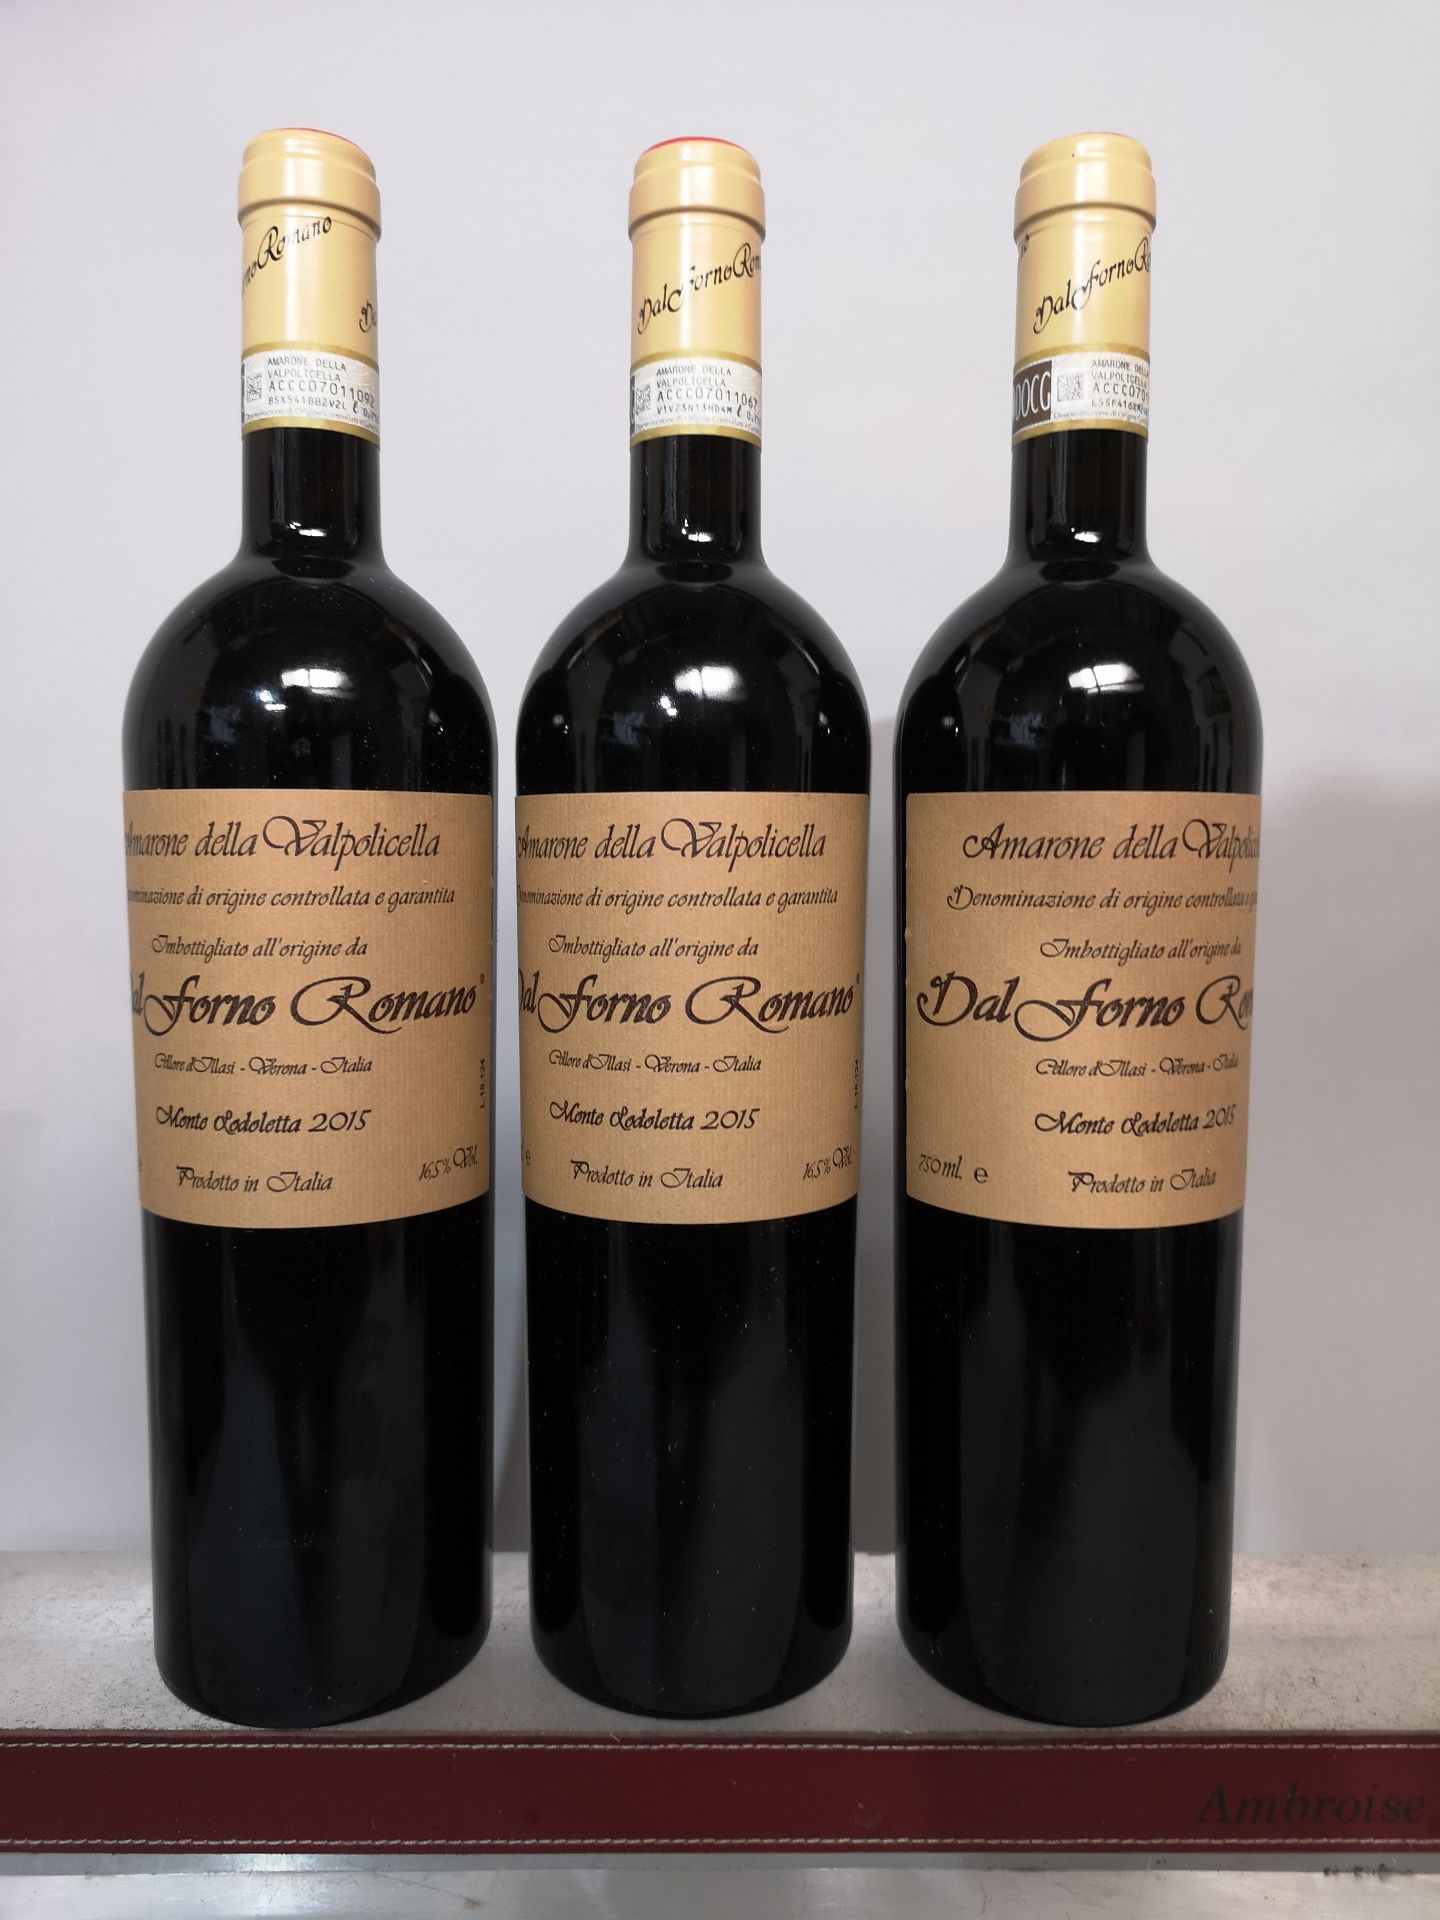 3 bottles Amarone della valpolicella dal for novelo - vigneto monte lodoletta, Italy 2015.